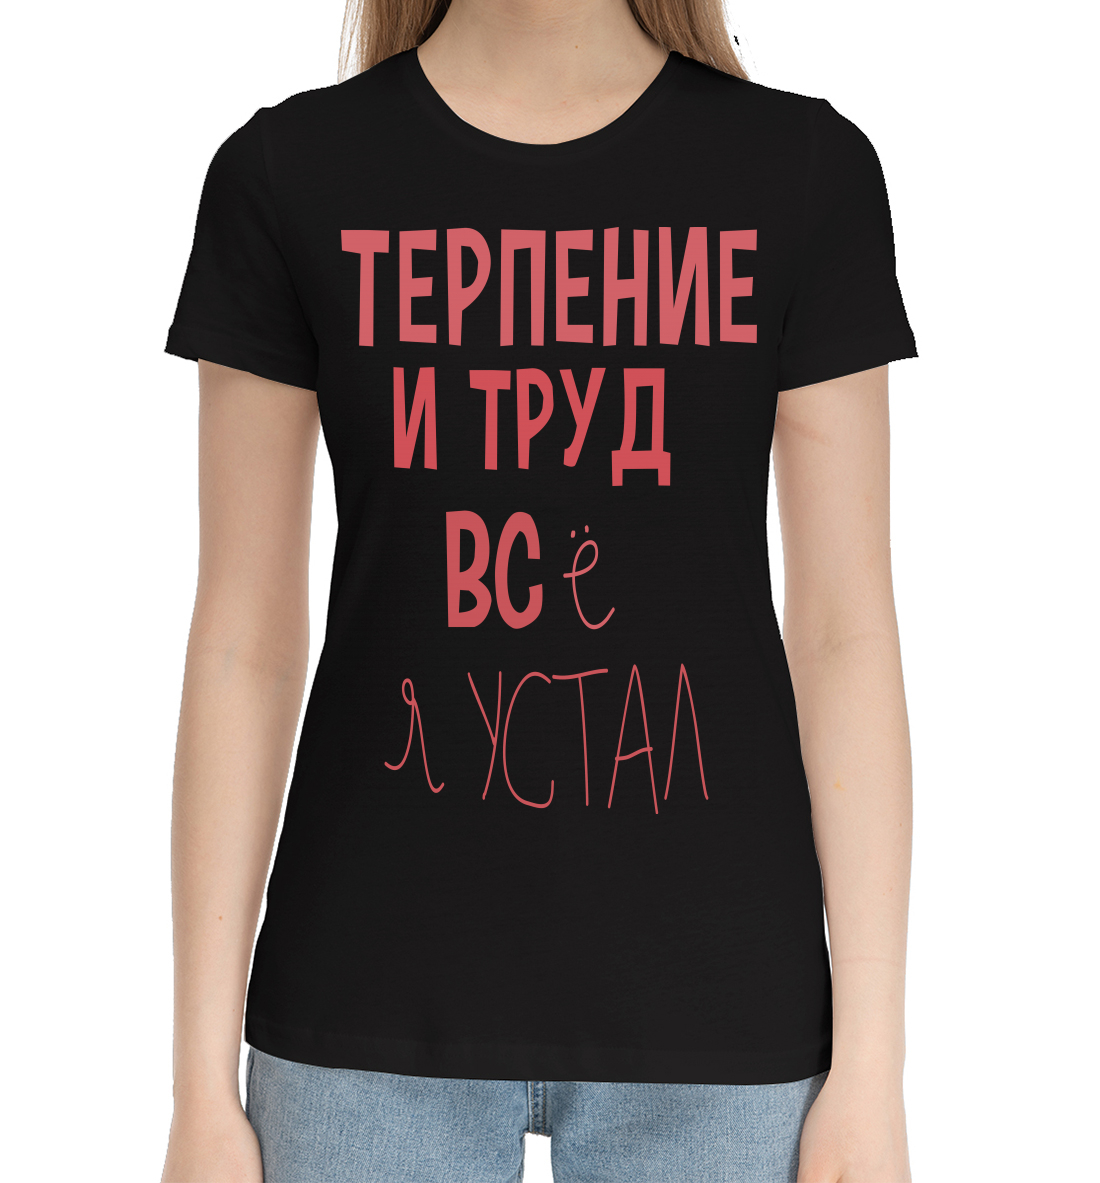 Женская Хлопковая футболка с надписью Терпение и труд..., артикул NDP-992363-hfu-1mp